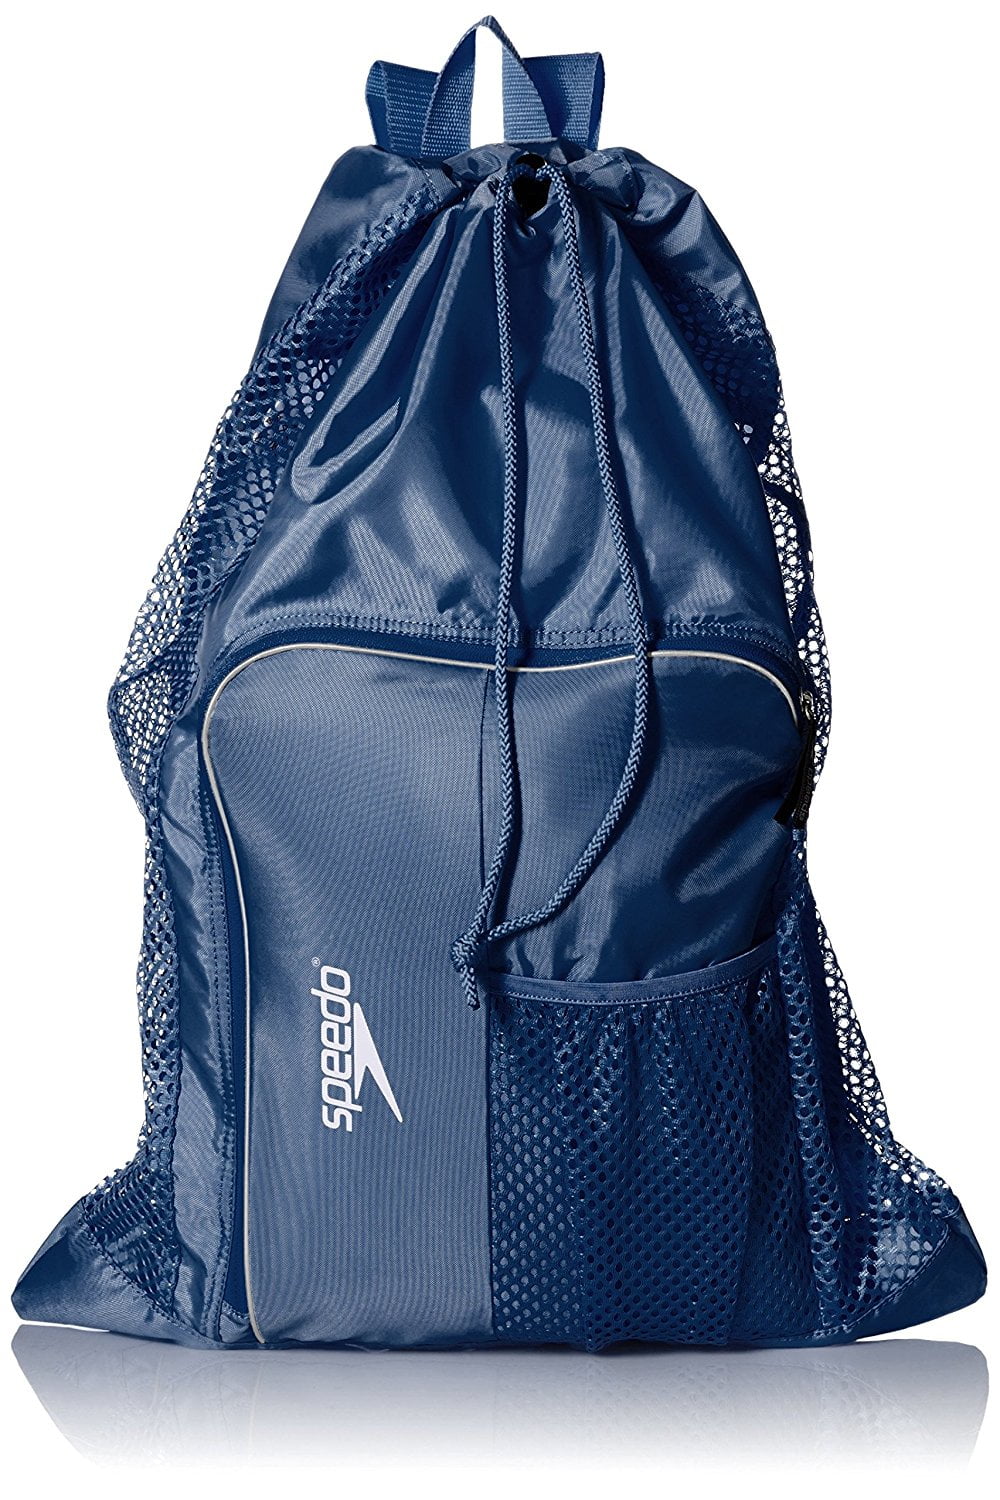 Swimming Swim Secure Mesh kit Bag Swimming Bags 